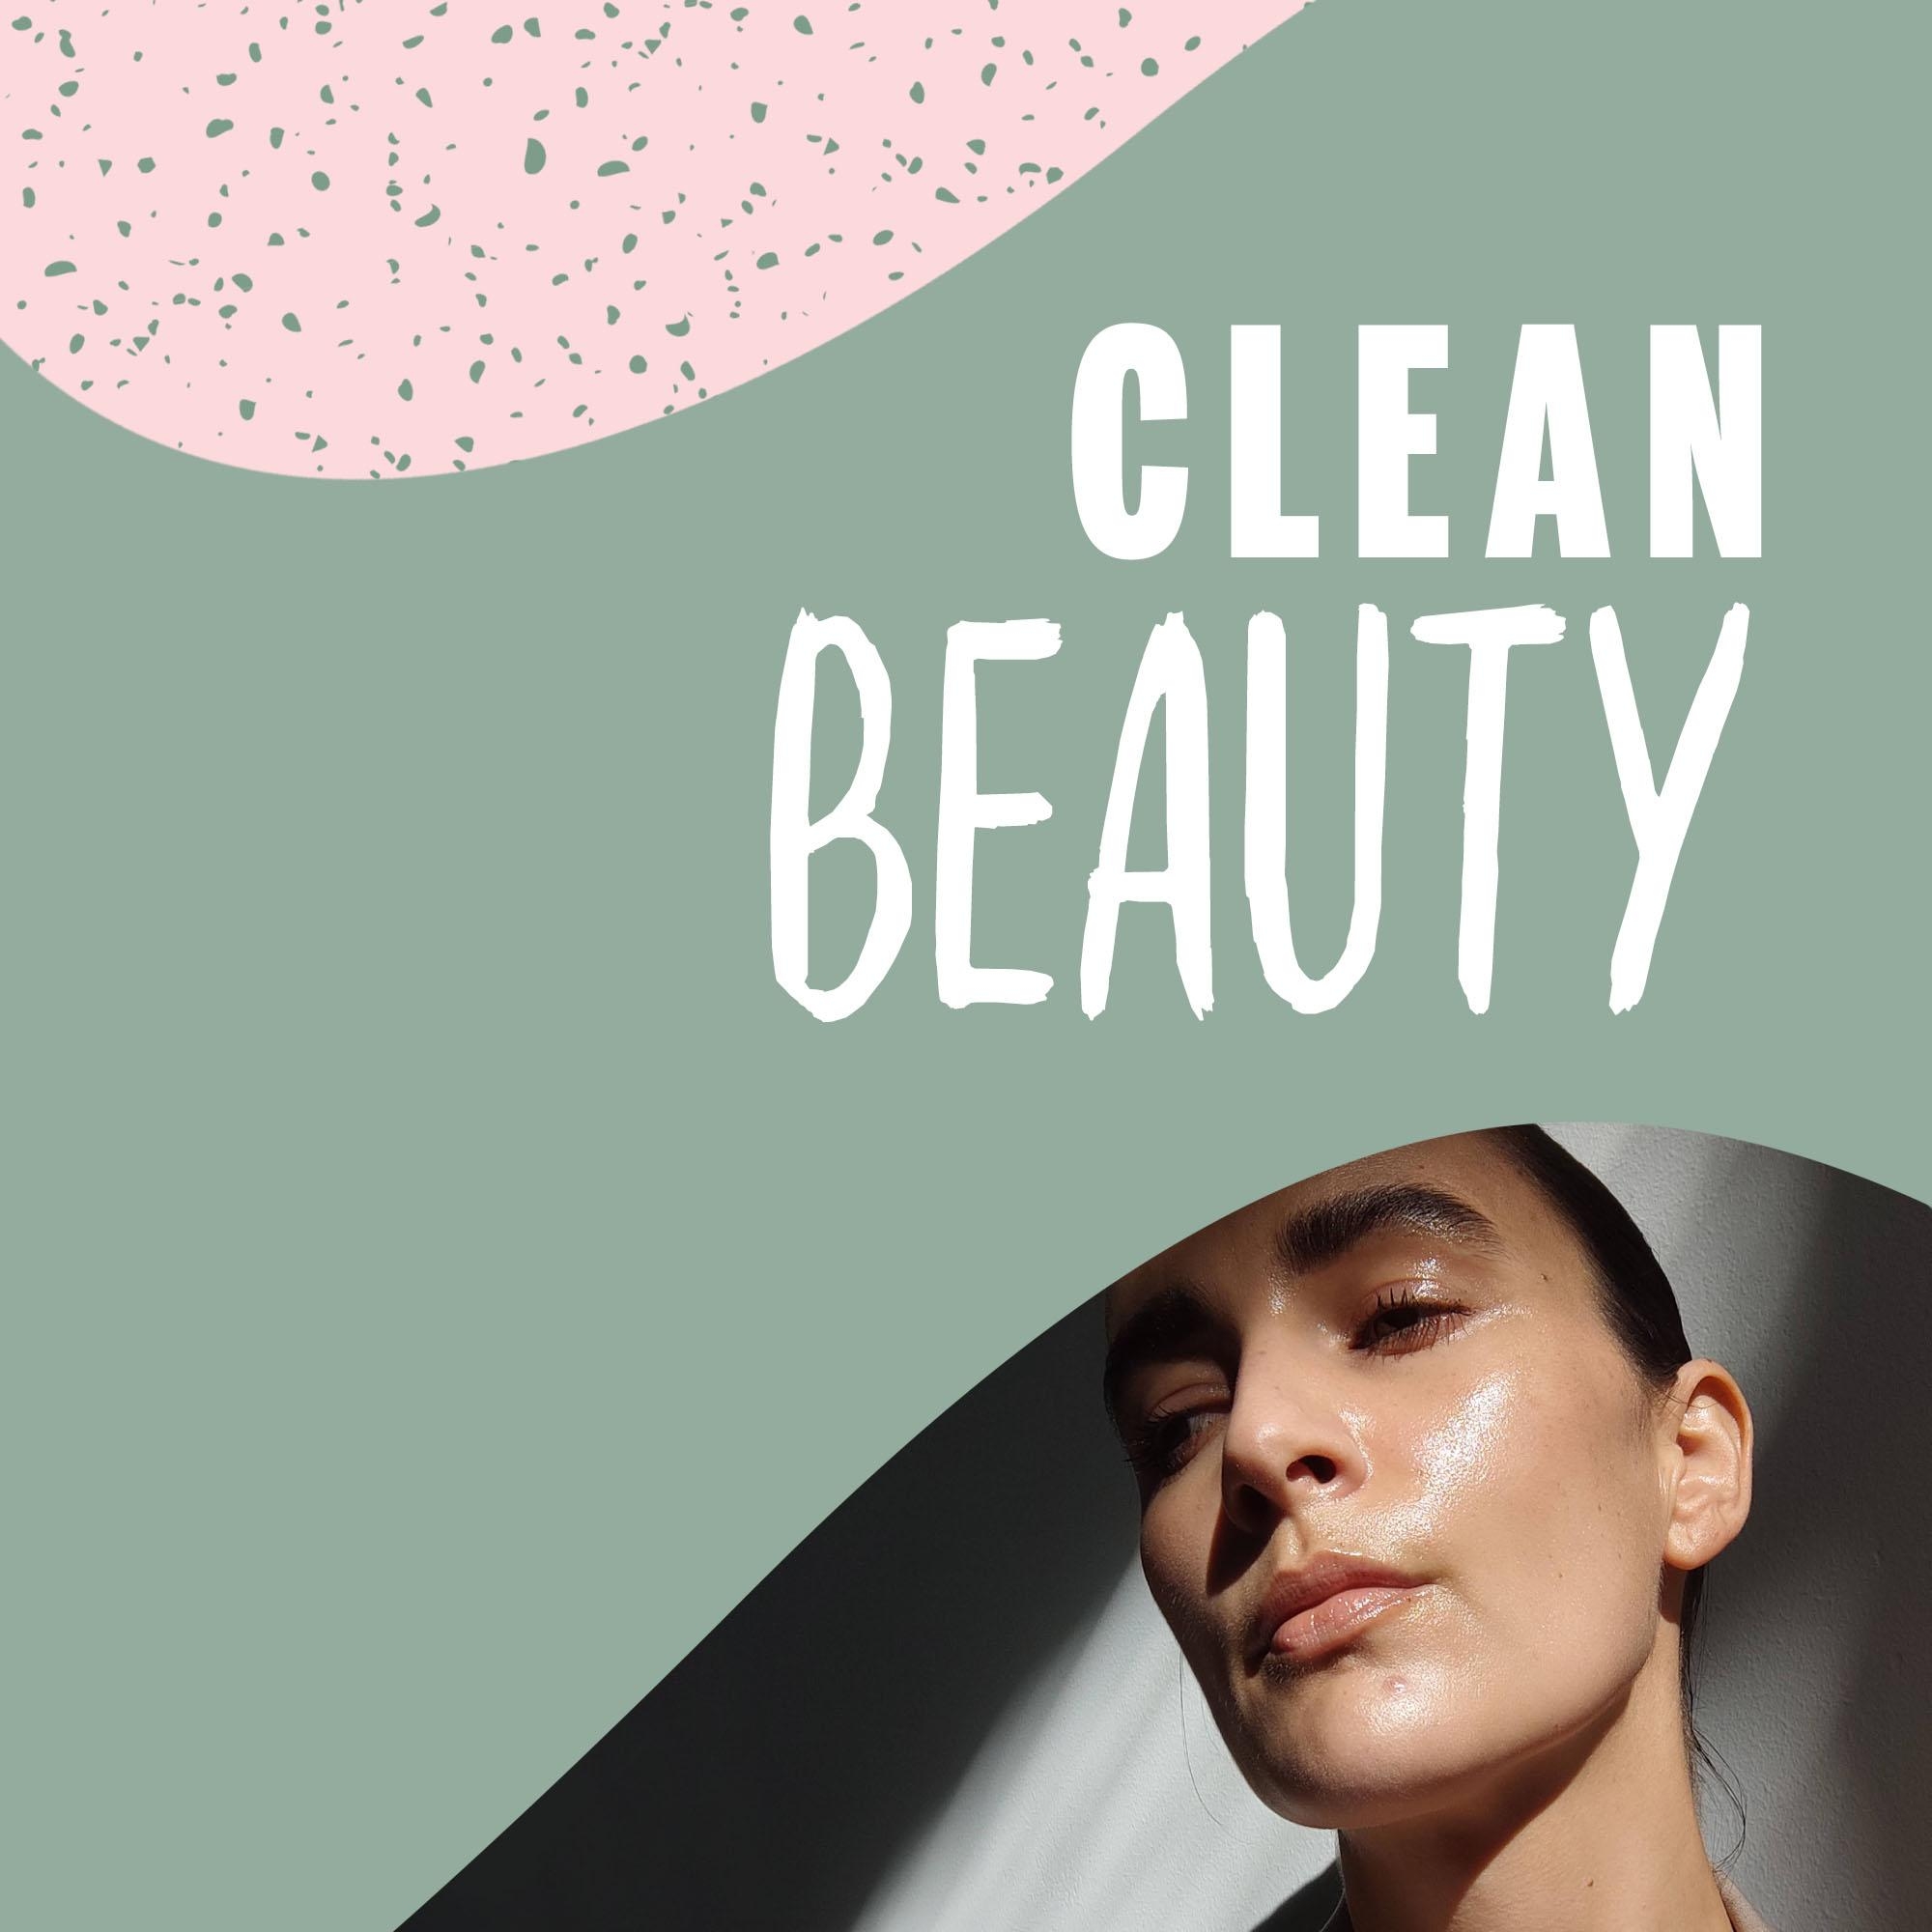 Heute bei #fairstehste auf unserem Instagram-Kanal zu Gast: Veronika von @Stilblut zum Thema "Clean Beauty". 💚